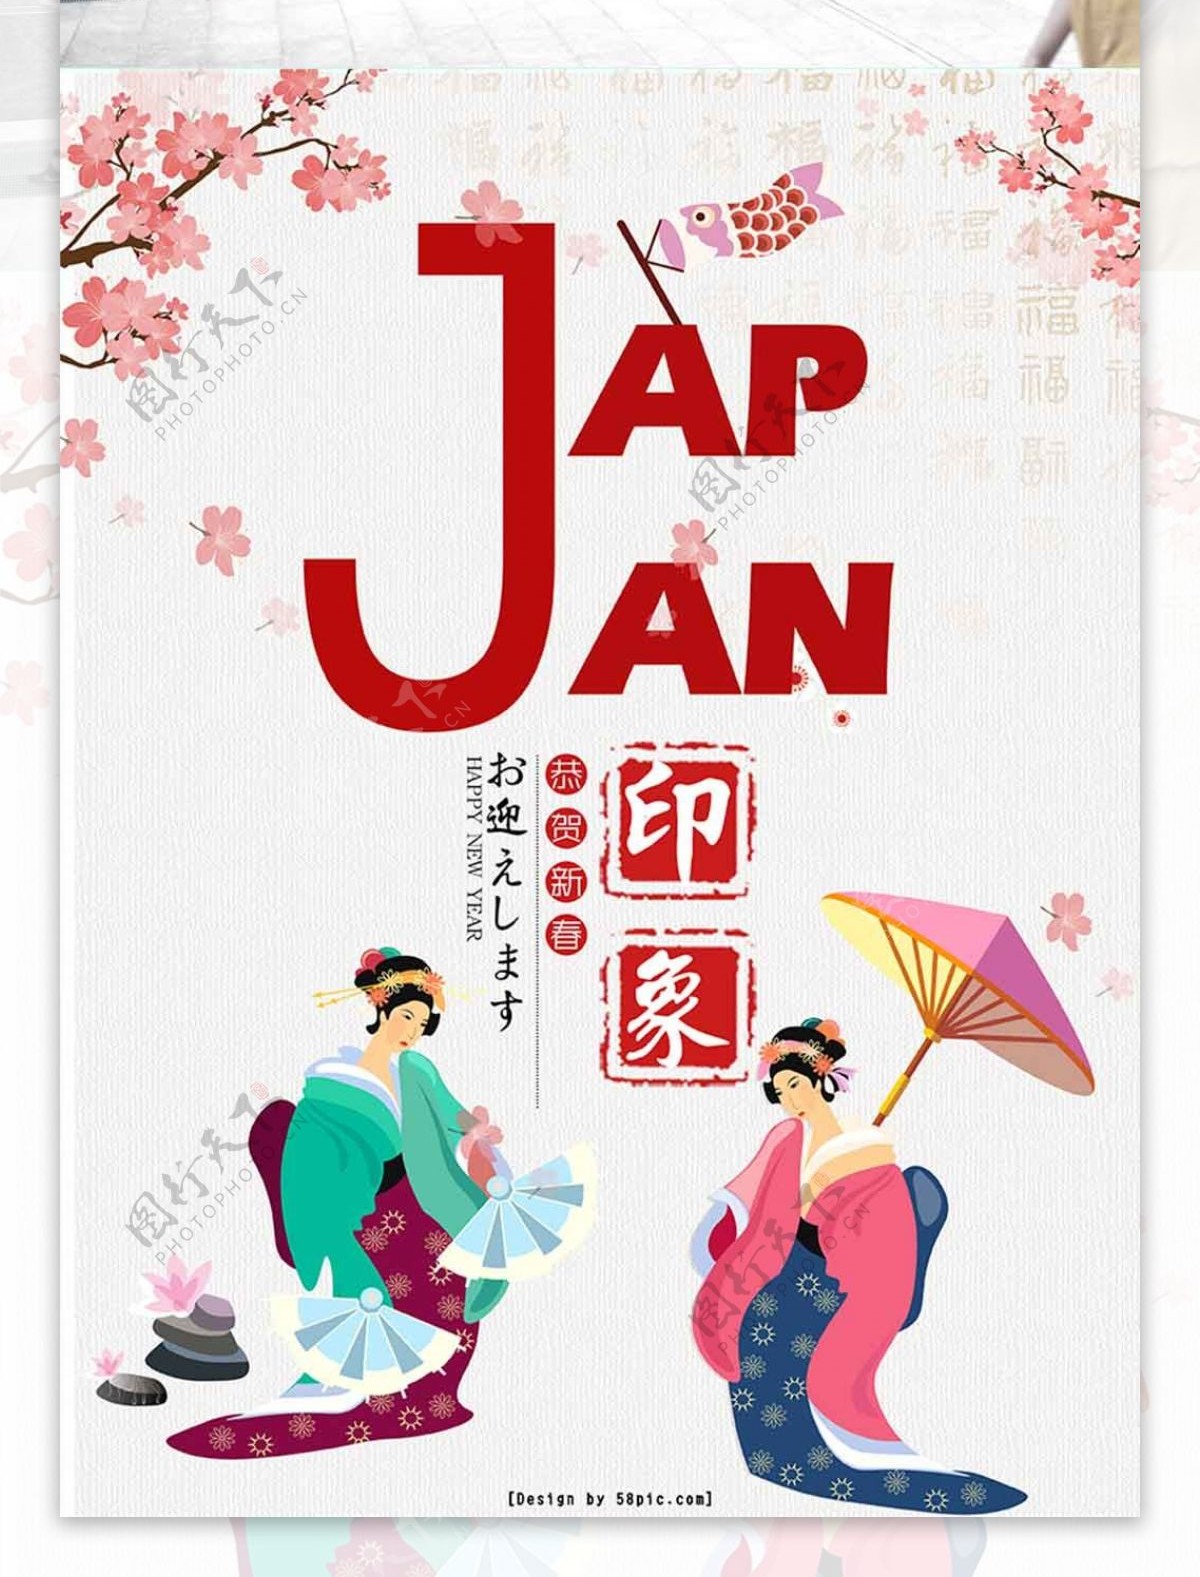 日式风格餐厅海报浅色浪漫樱花海报